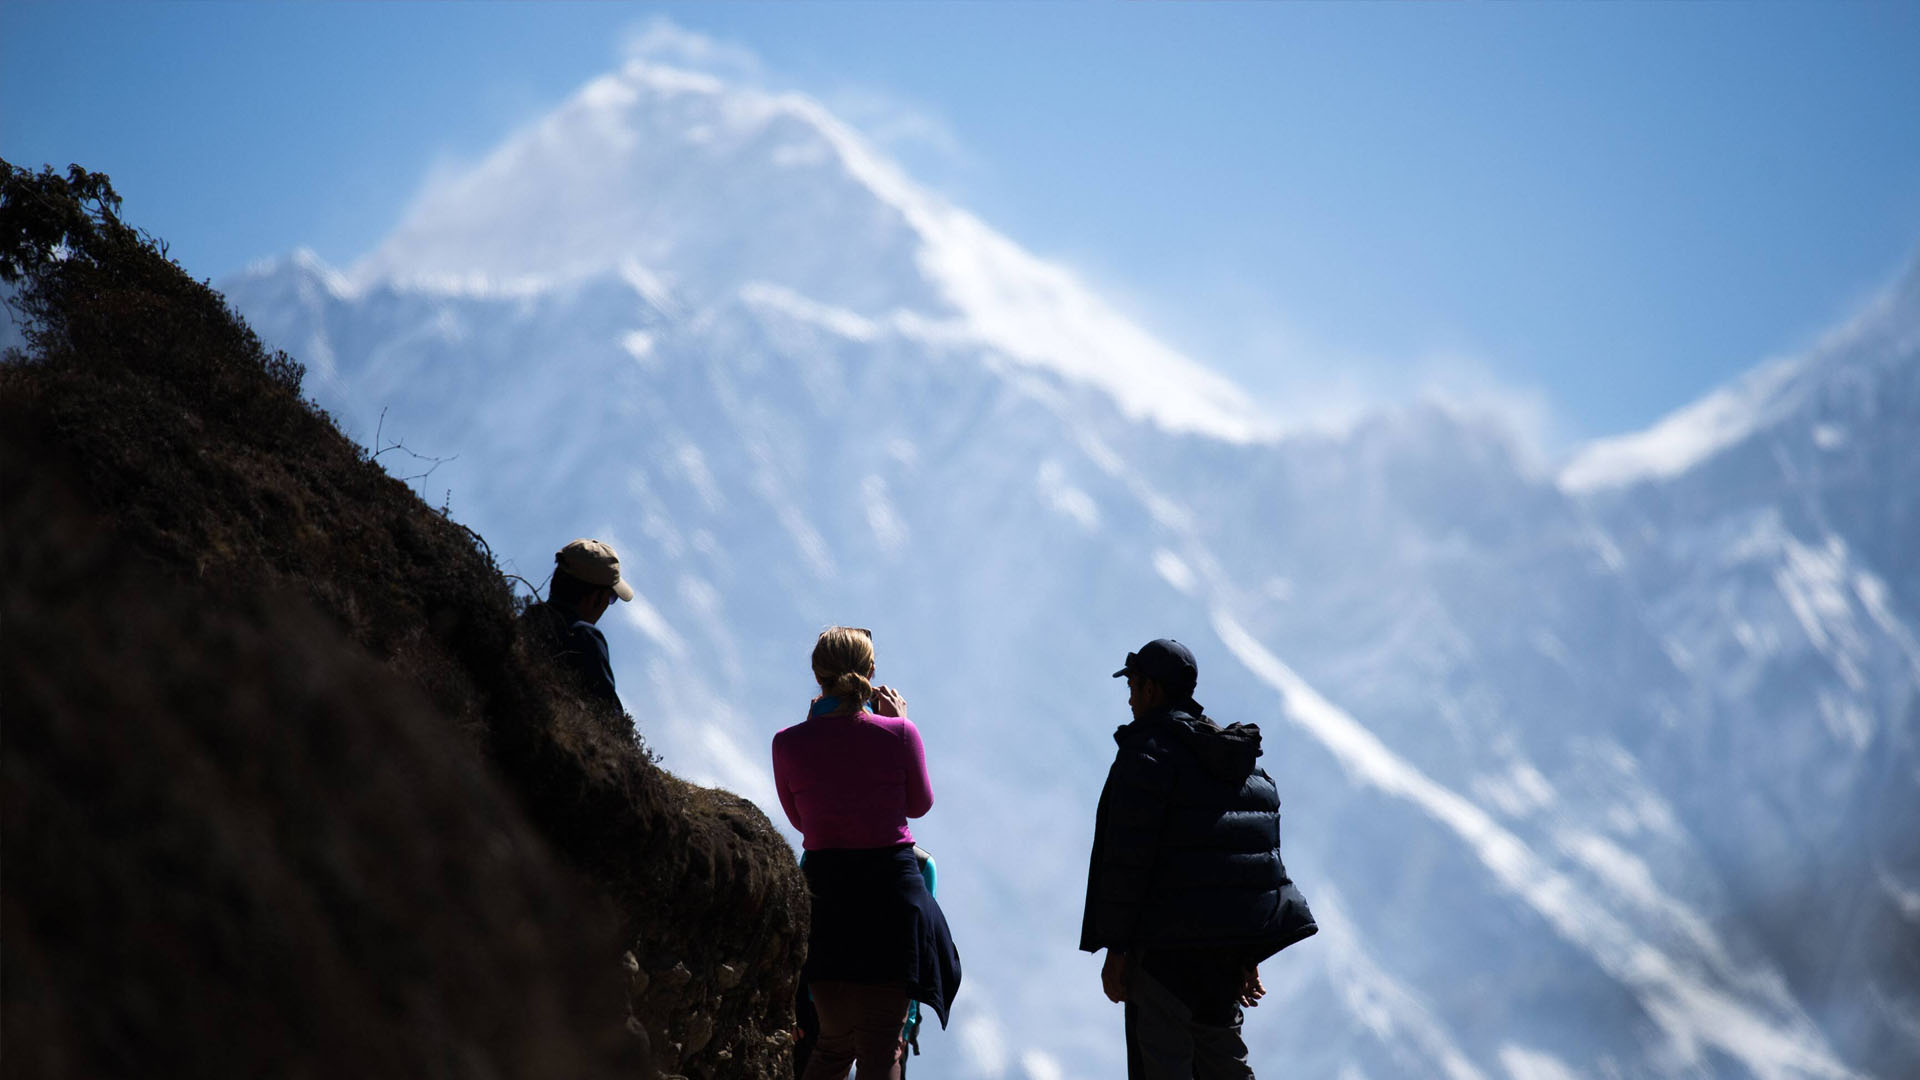 Включи гори 7. Начало пути к горам. Турист на обрыве непальских гор. Взрослые люди взбираются на гору. Непал горы взобраться.